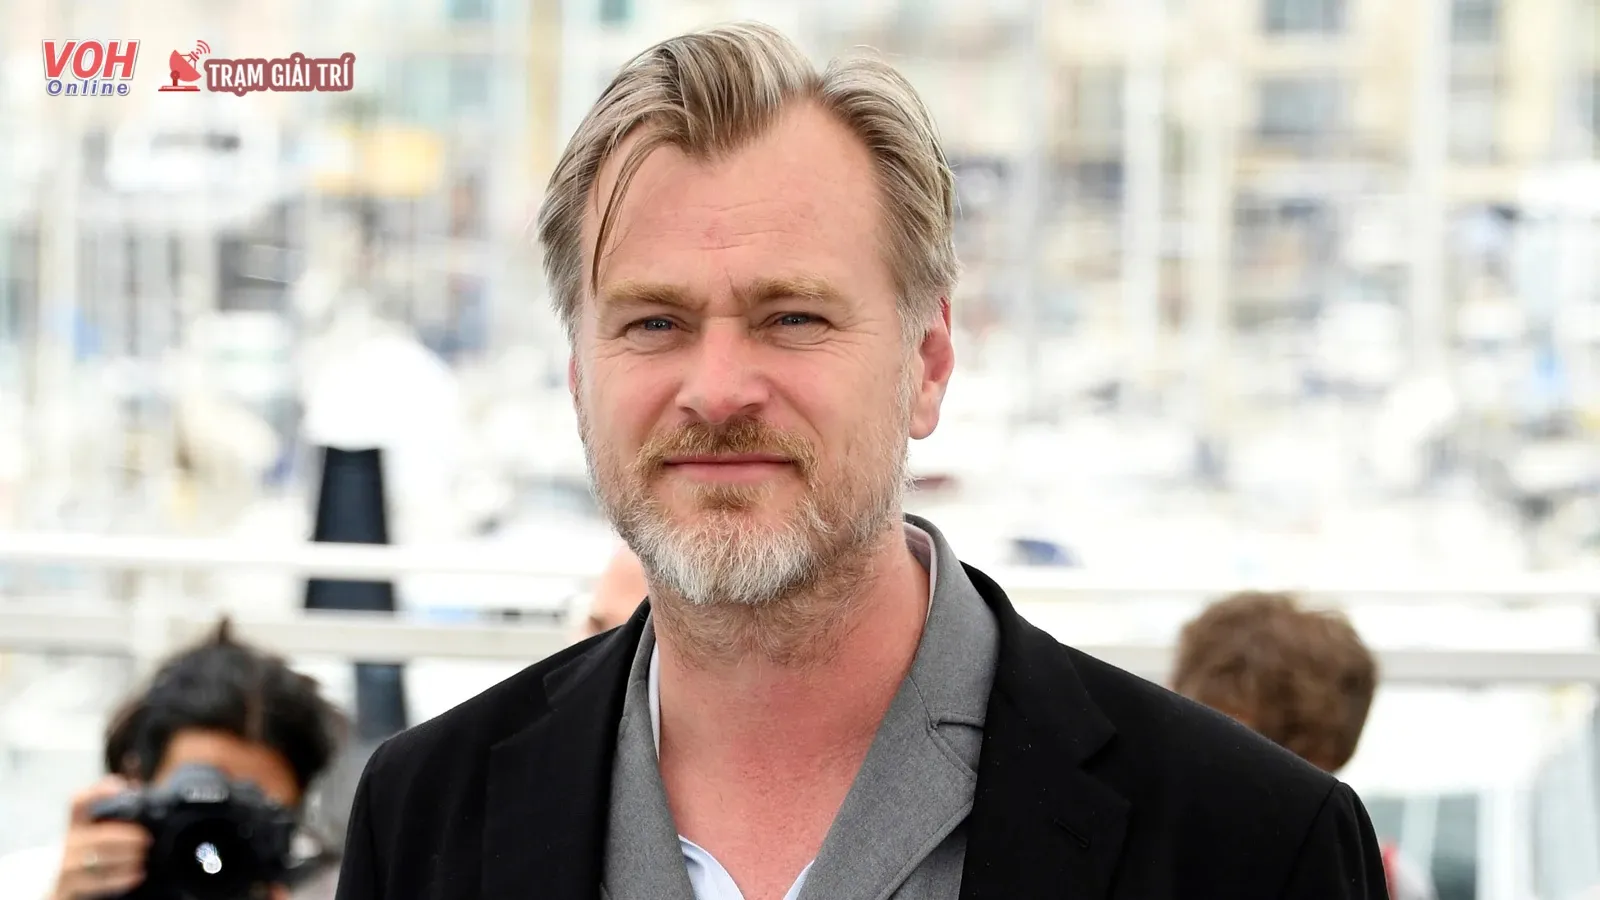 Tiểu sử của Christopher Nolan – Đạo diễn kỳ tài của điện ảnh Hollywood